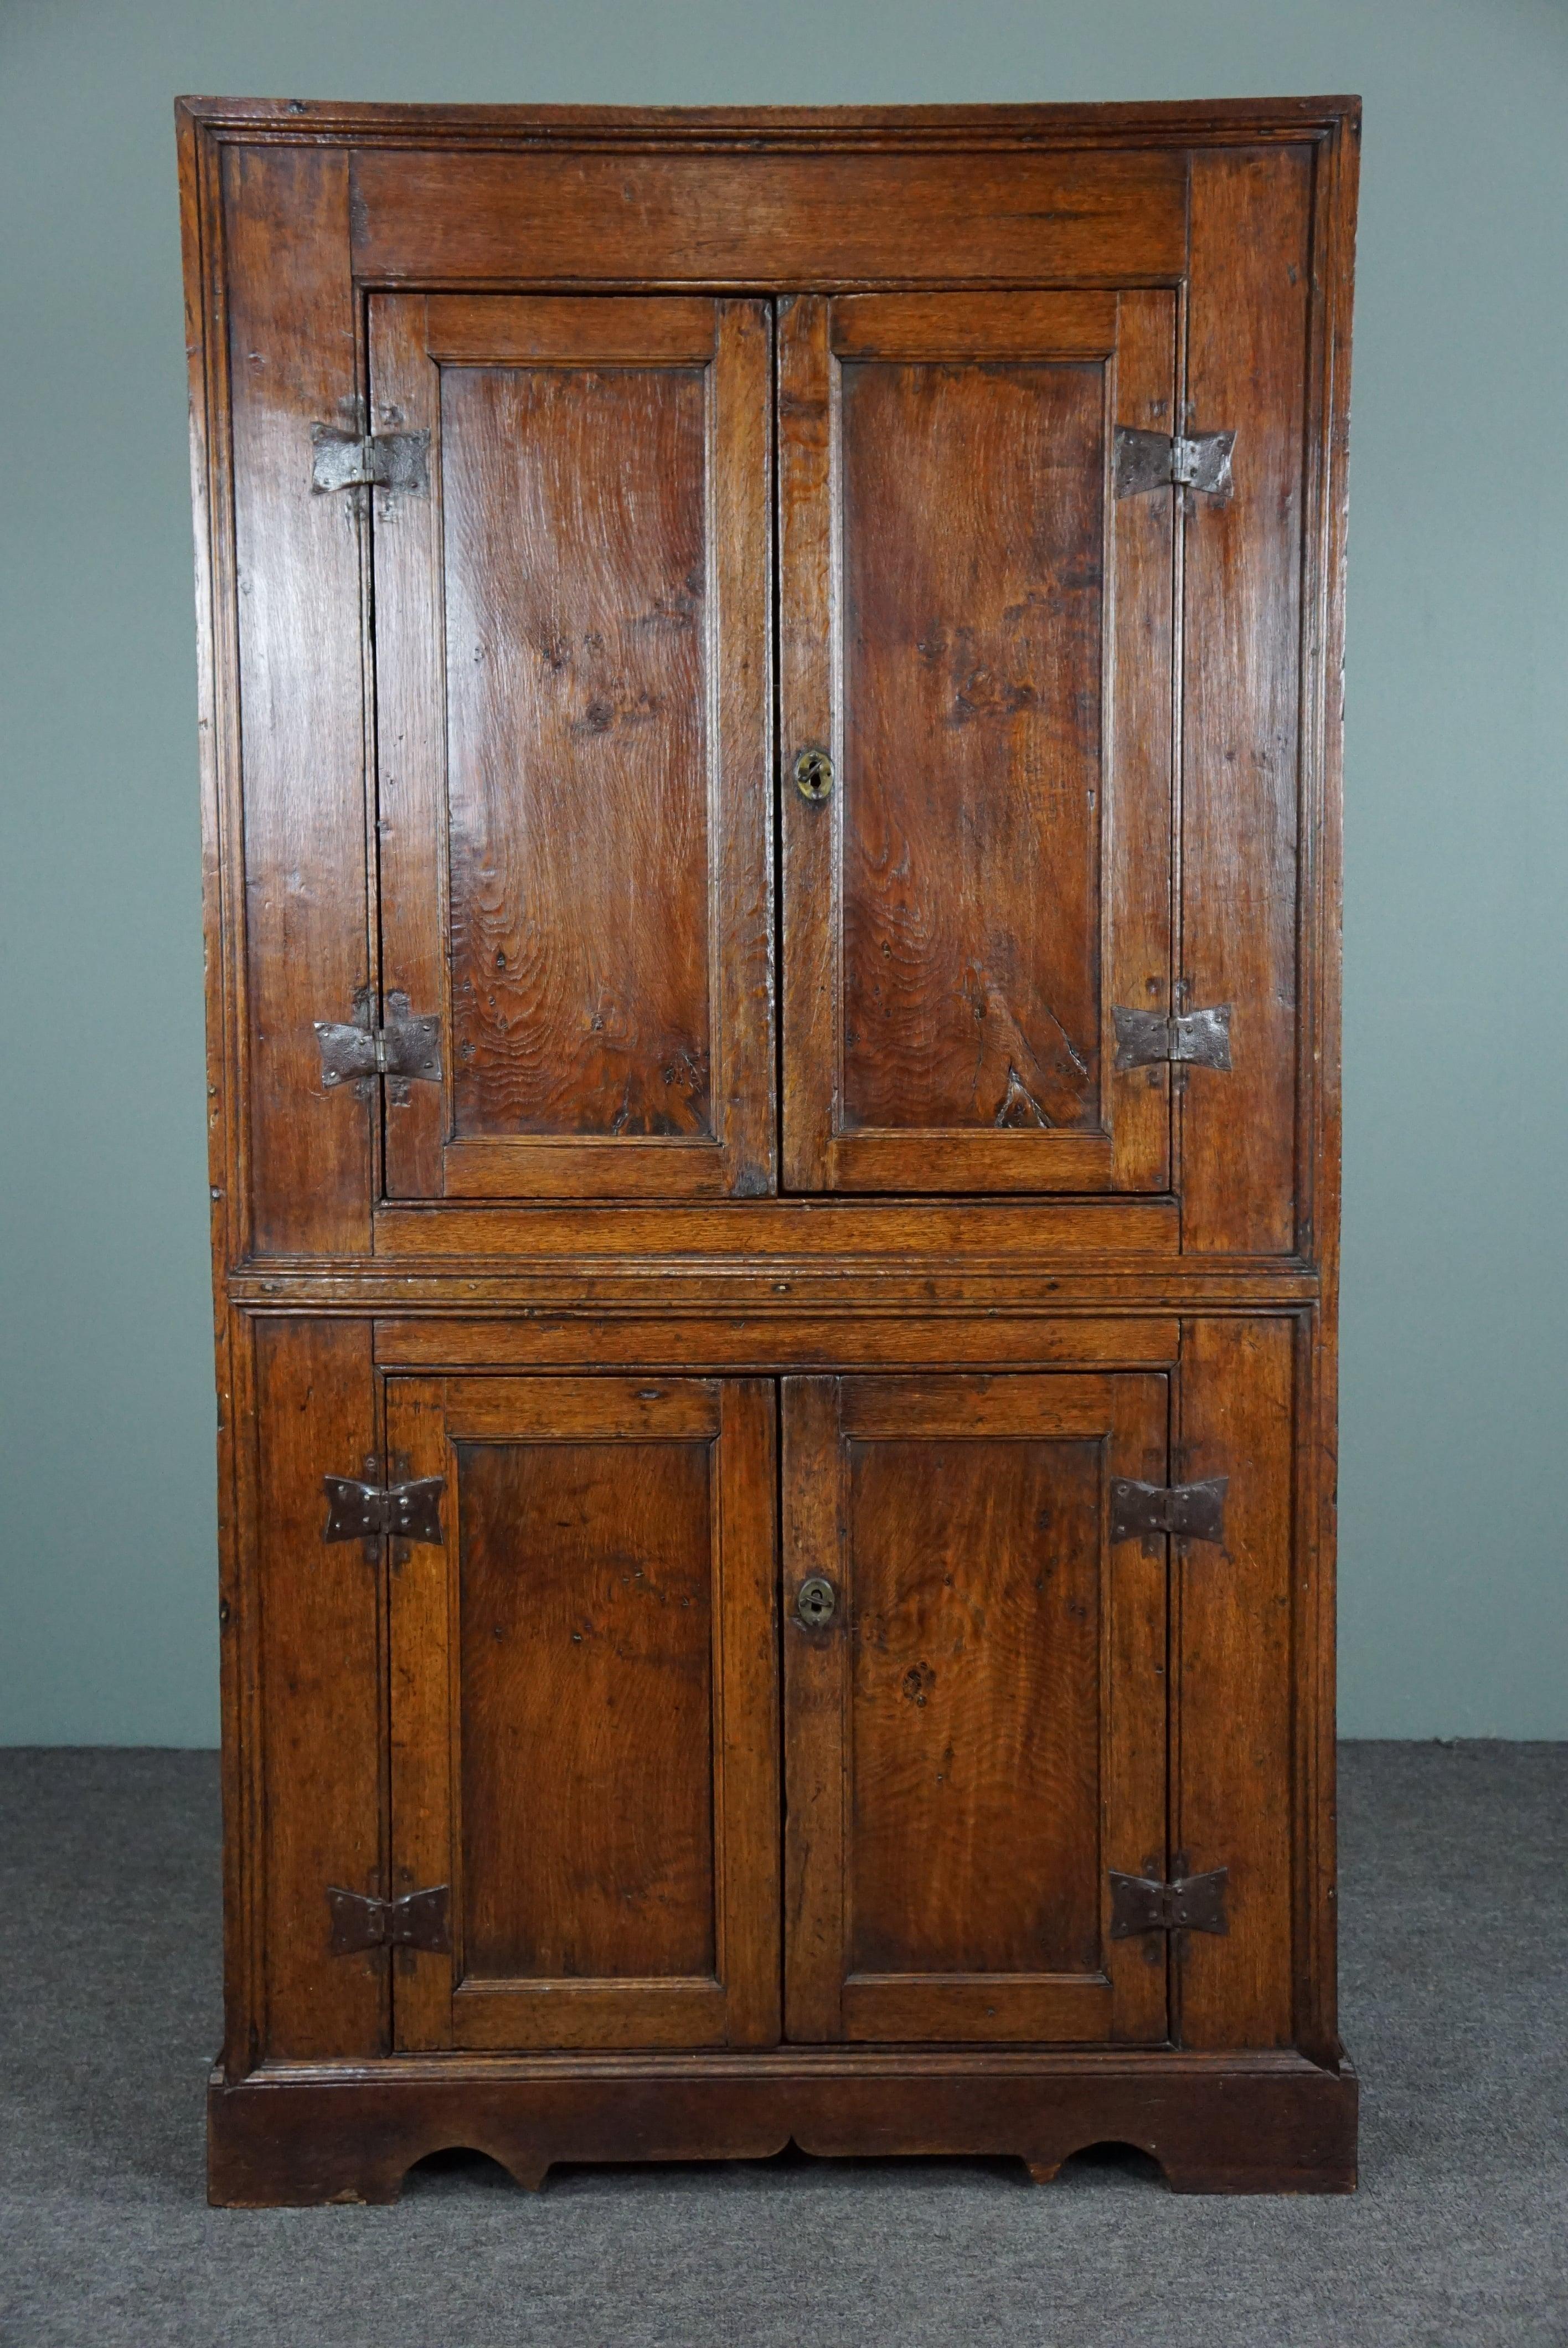 Cette belle et très pratique armoire à quatre portes date du début ou du milieu du XVIIIe siècle.

Ce magnifique meuble porte son âge avec fierté et a plus que résisté à l'épreuve du temps.
Qu'il s'agisse d'un intérieur moderne, classique,